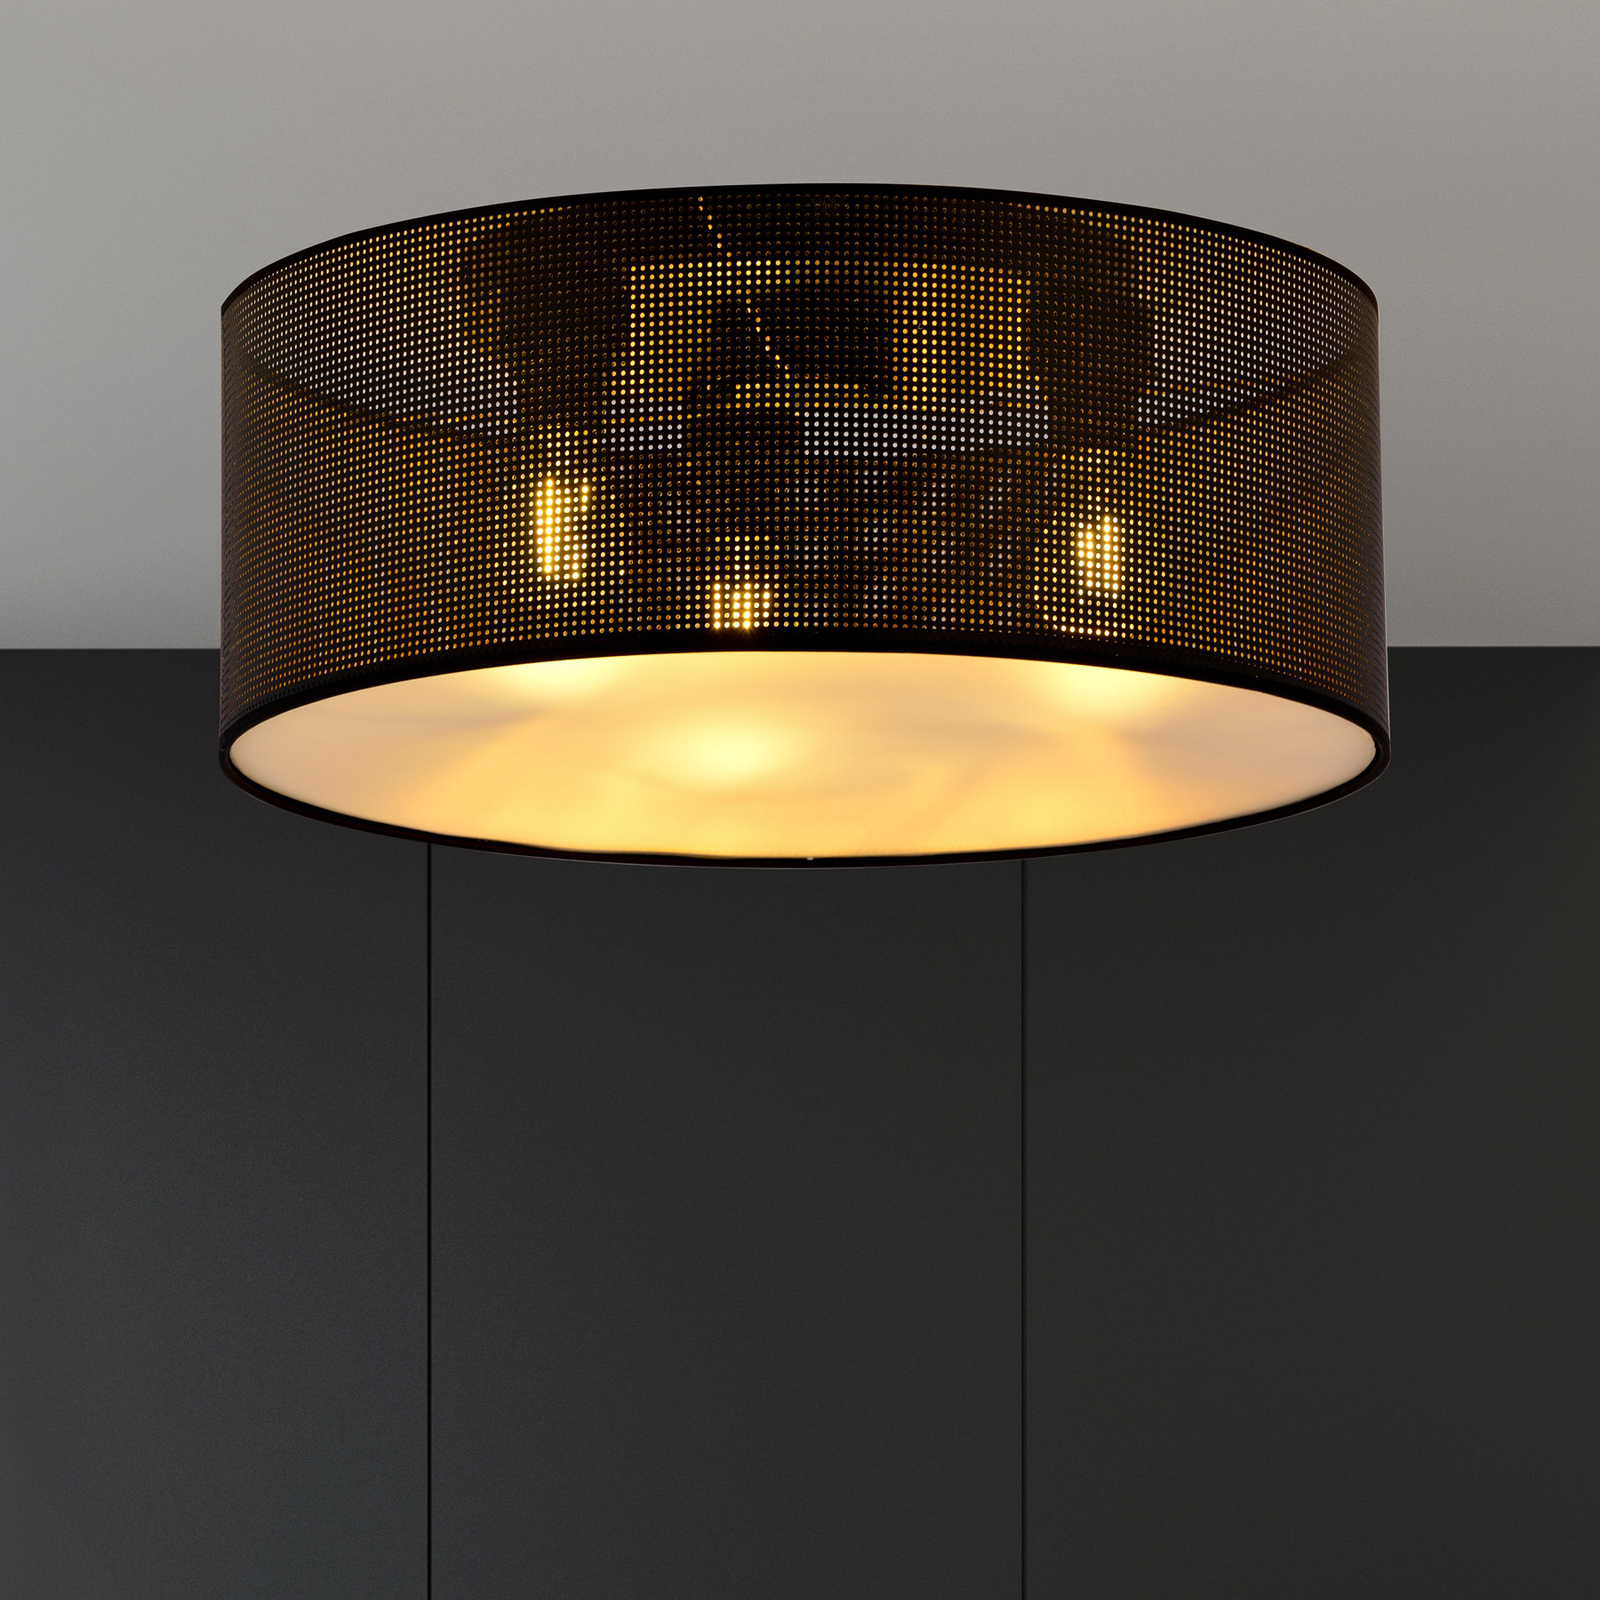 Deckenlampe Aston, Ø 50 cm, schwarz/gold